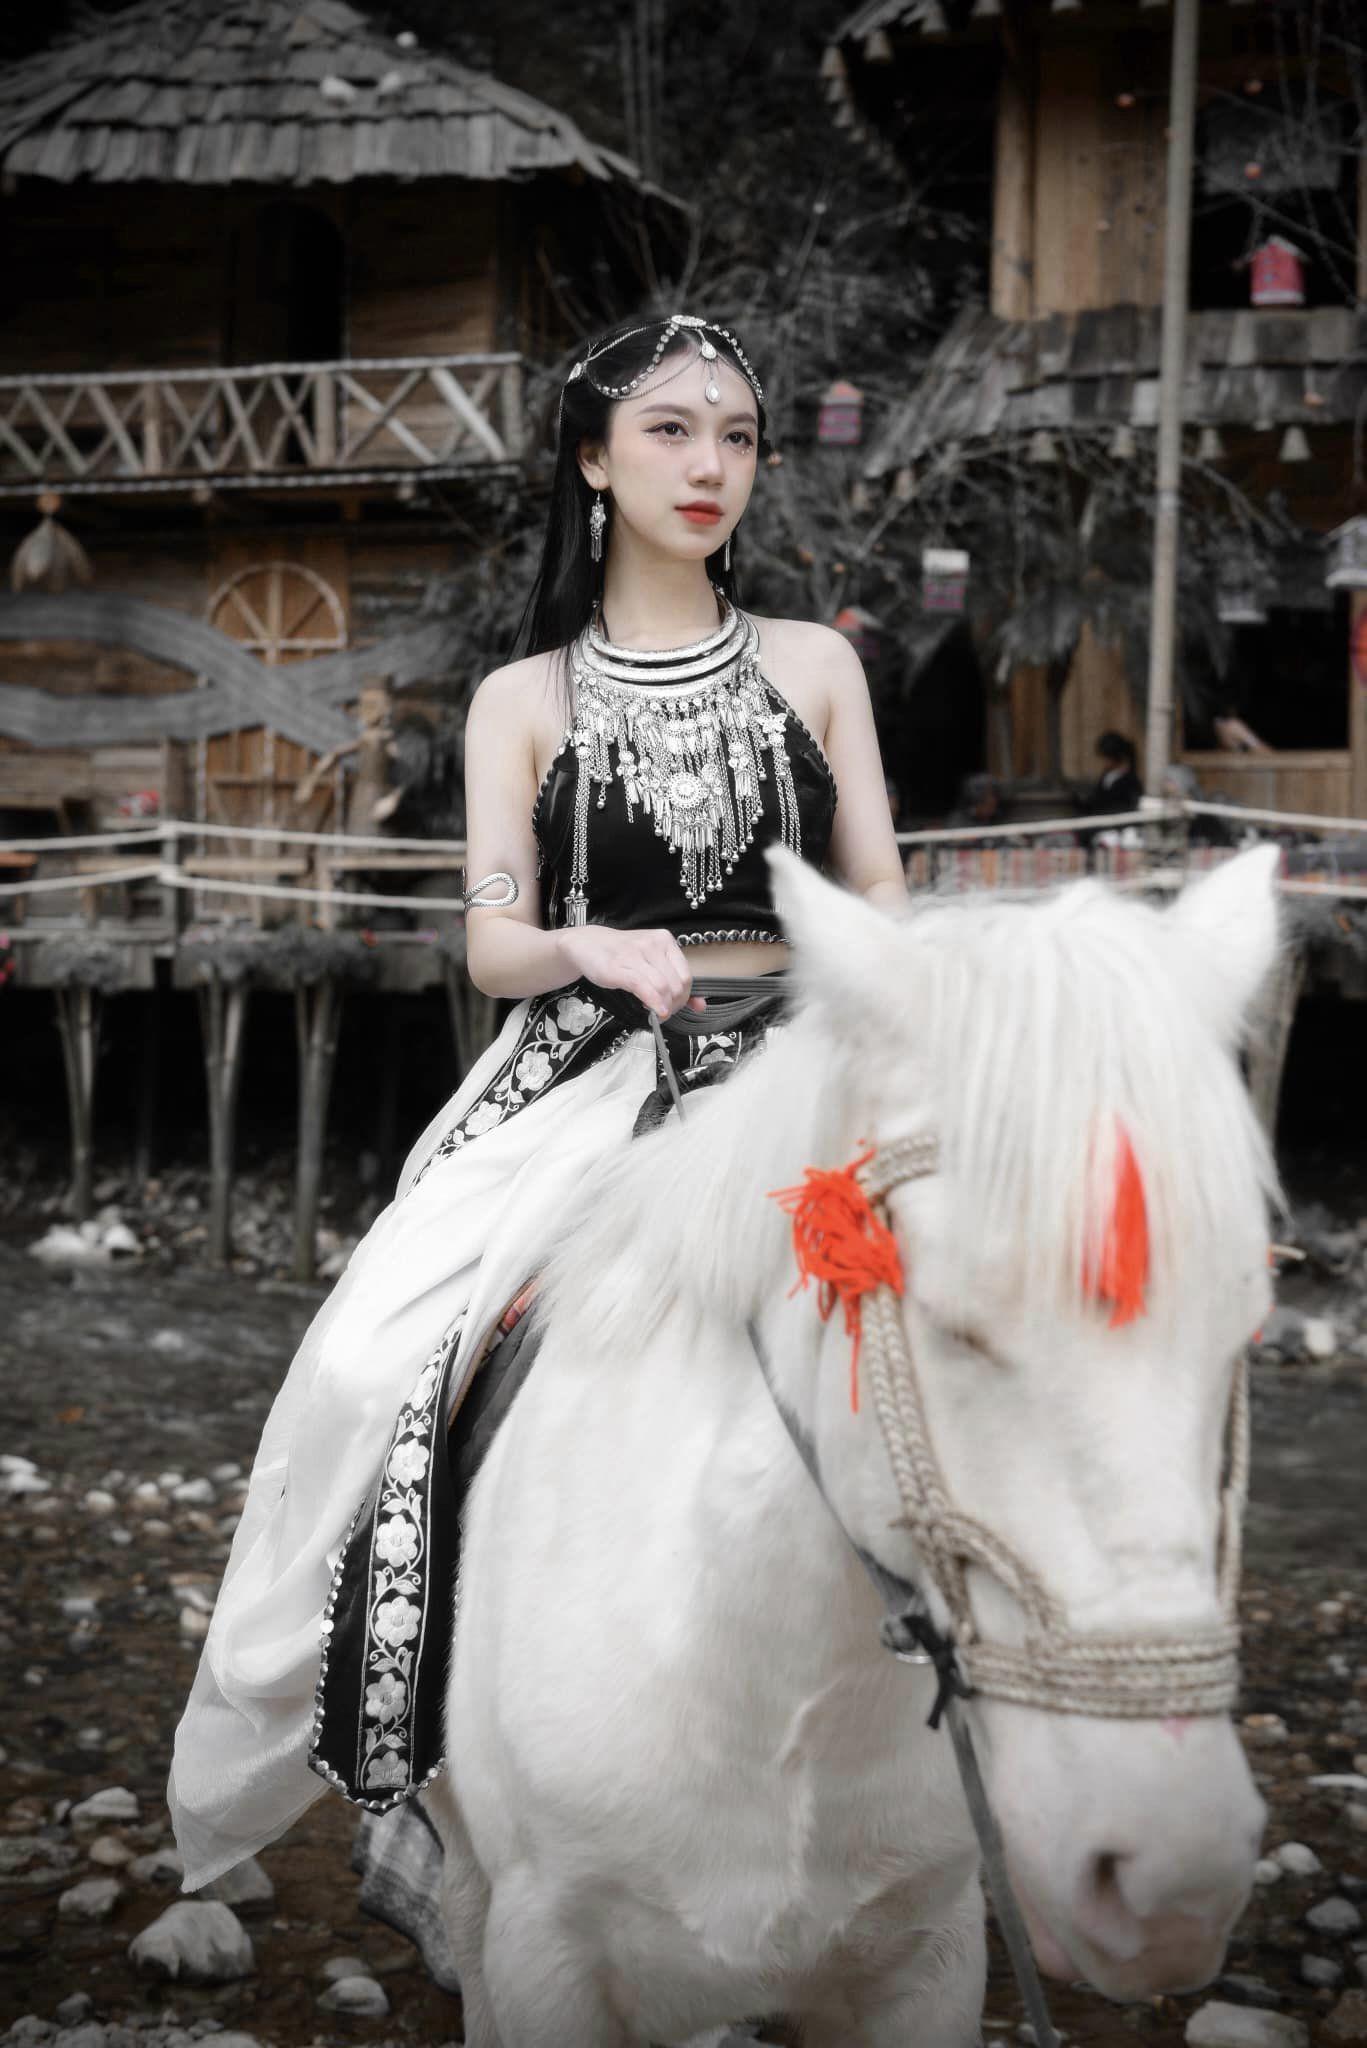 Cưỡi ngựa, bắn cung, nữ diễn viên 20 tuổi diện áo yếm khoe da trắng phát sáng, dáng nuột nà - 3